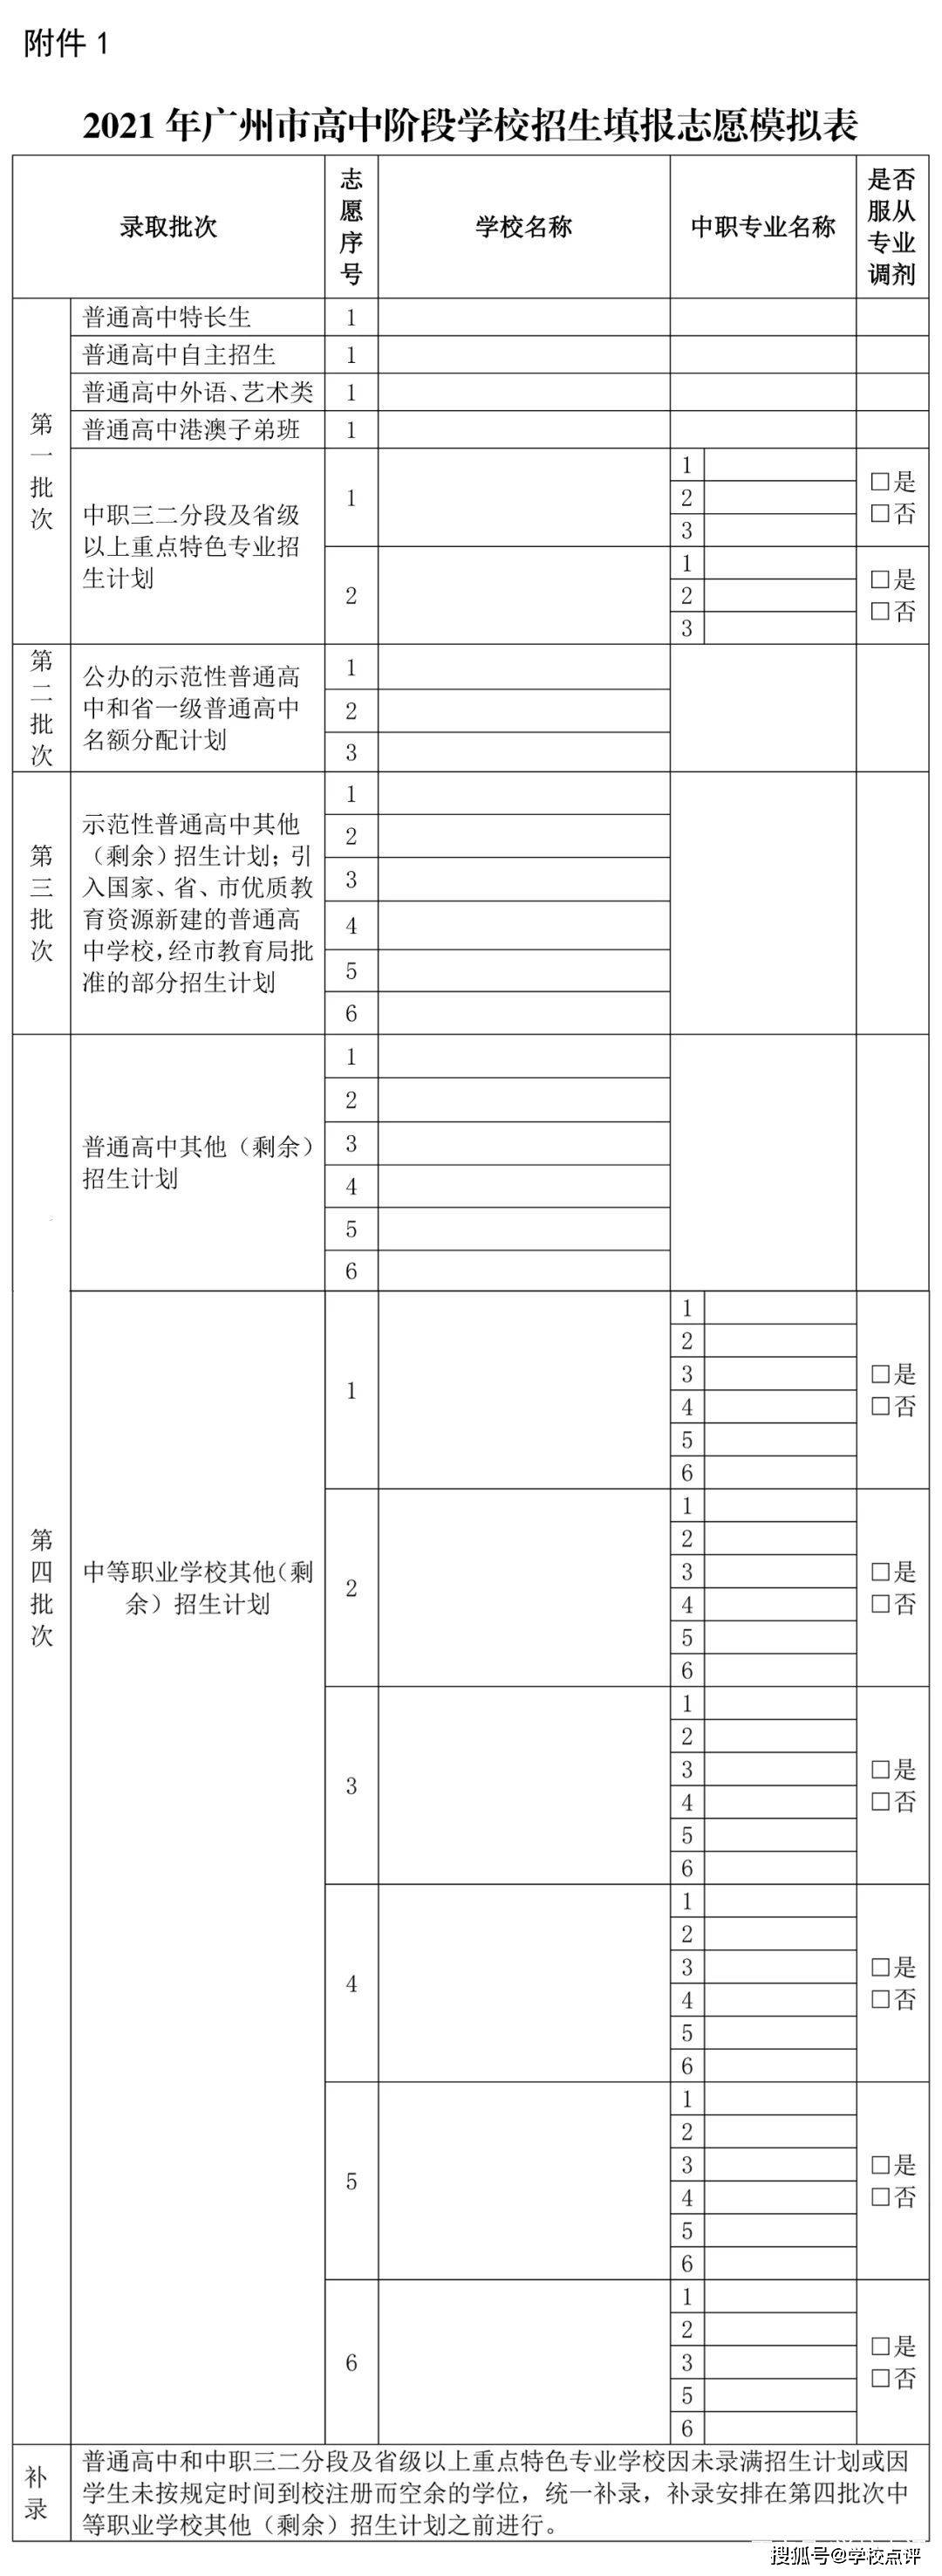 2021年广州中考志愿填报细则出炉!